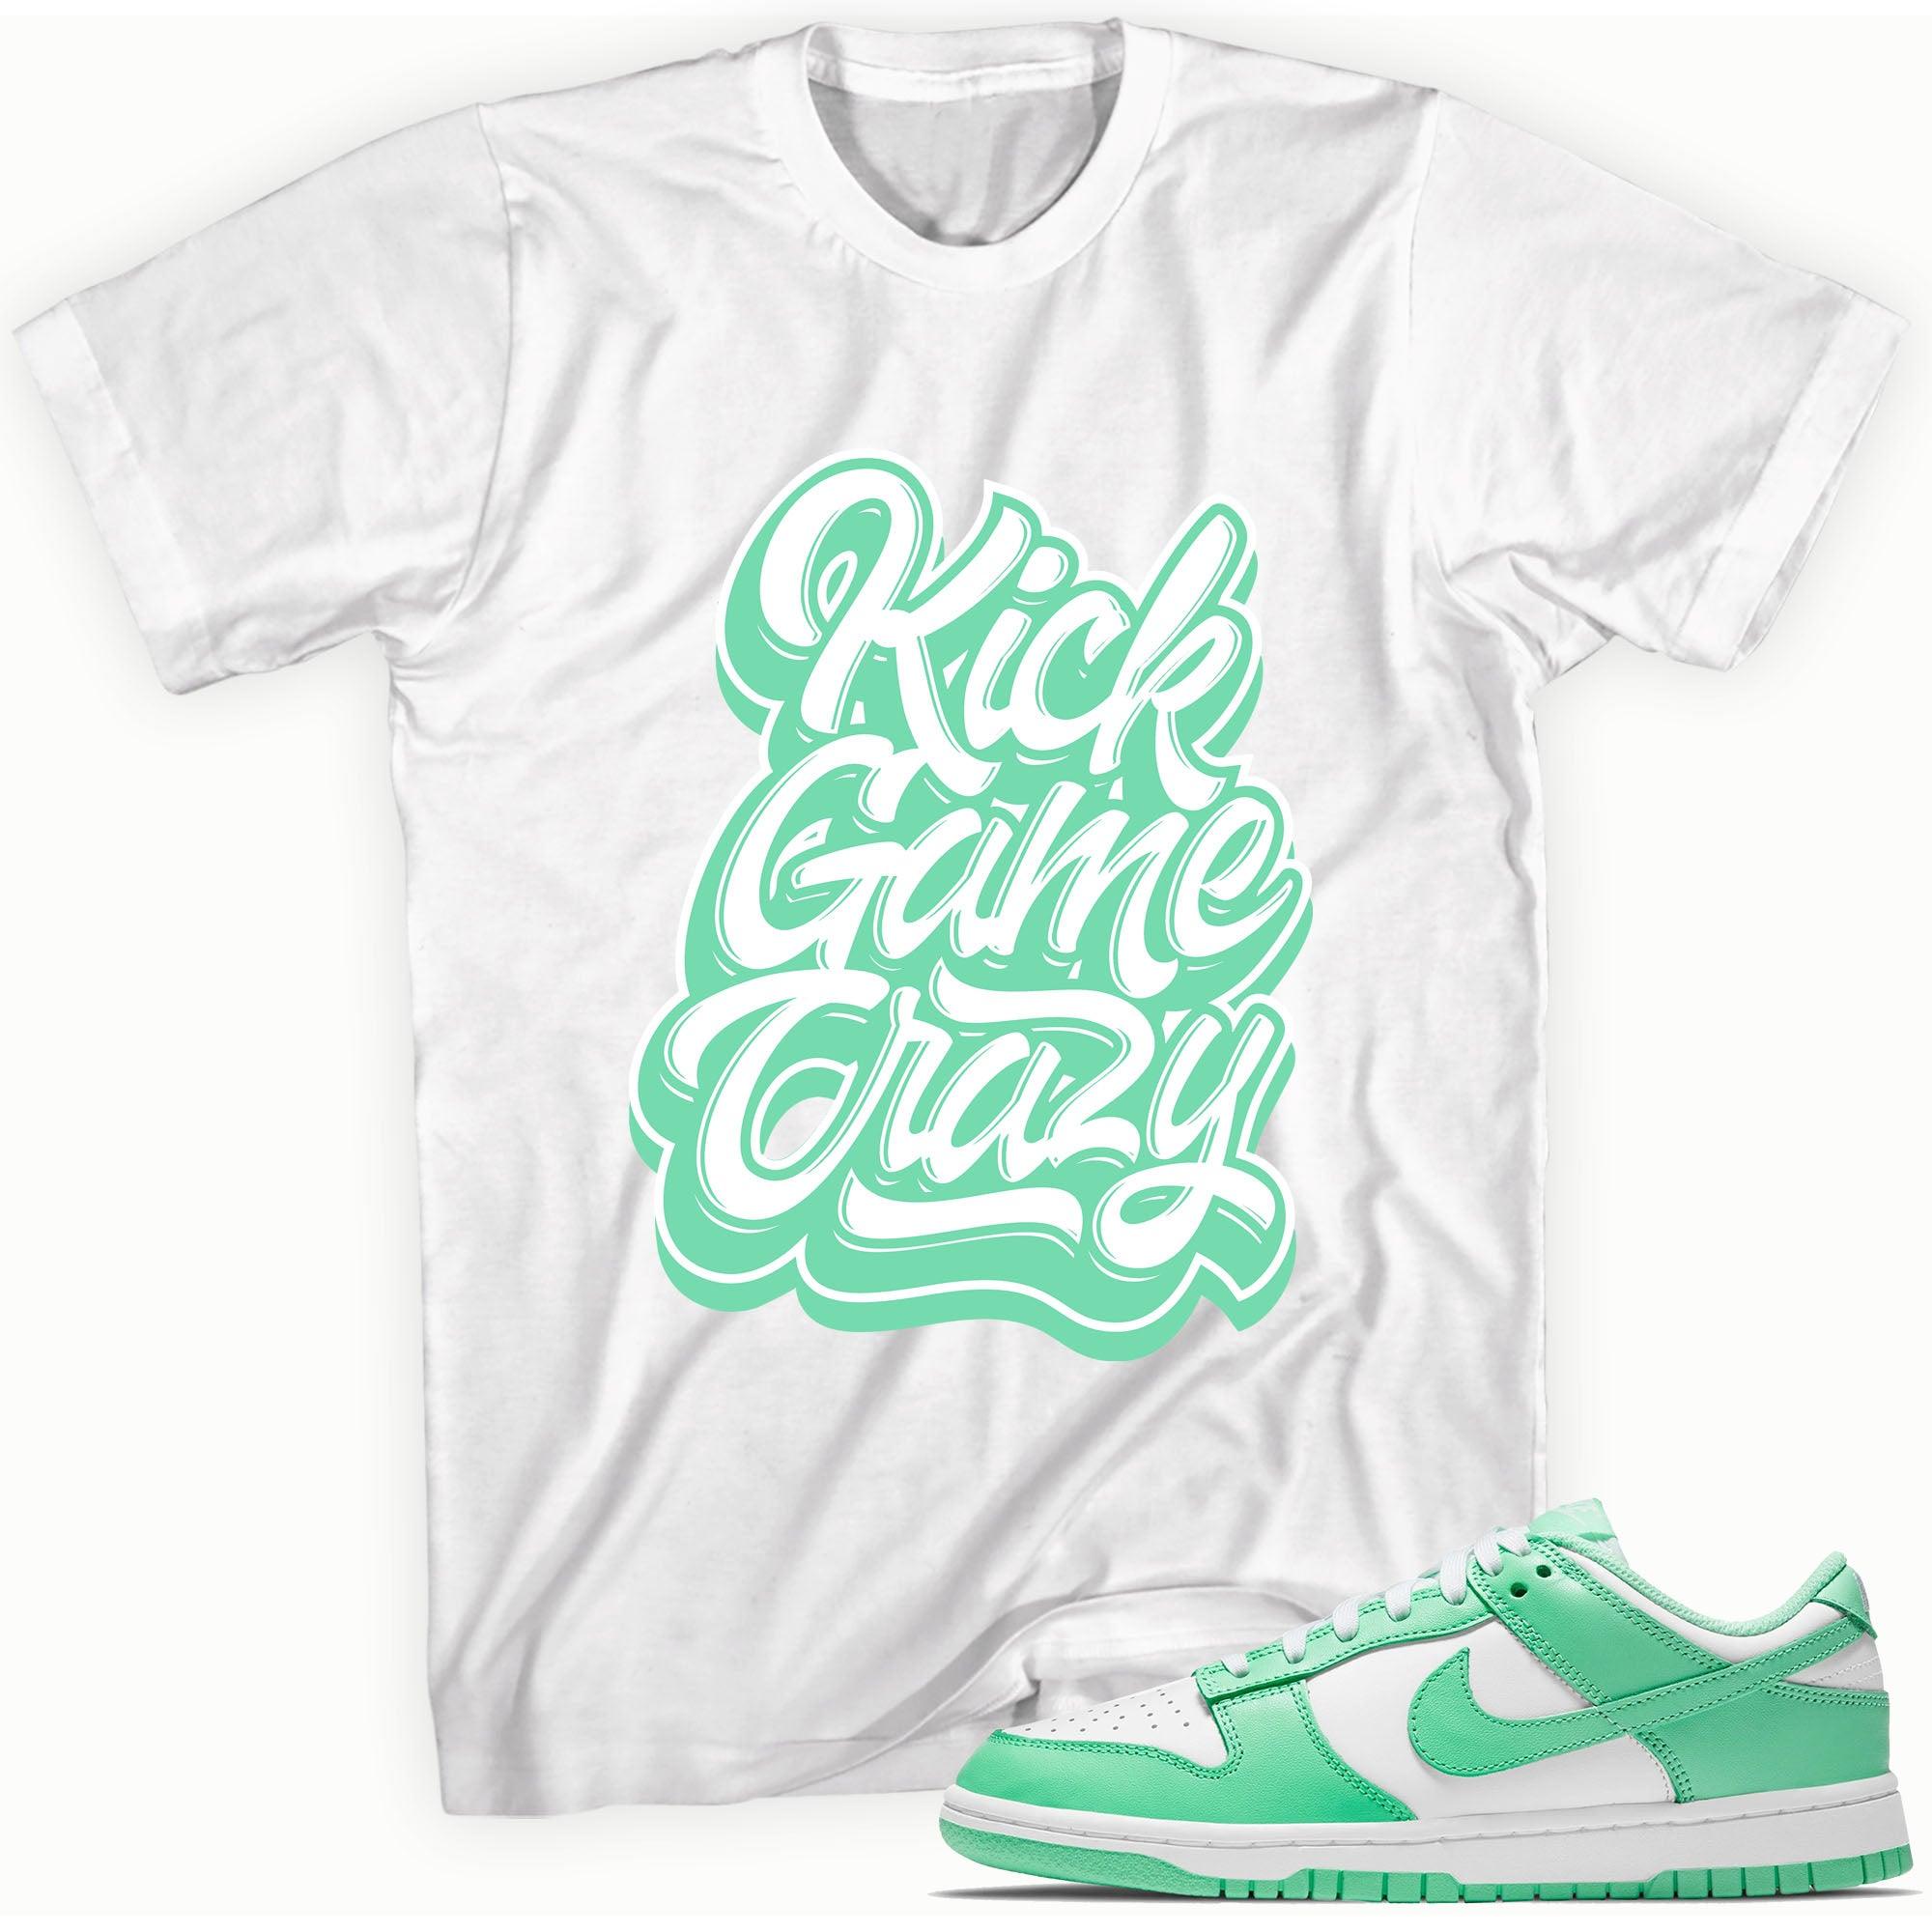 Kick Game Crazy Shirt Nike Dunk Low Green Glow photo